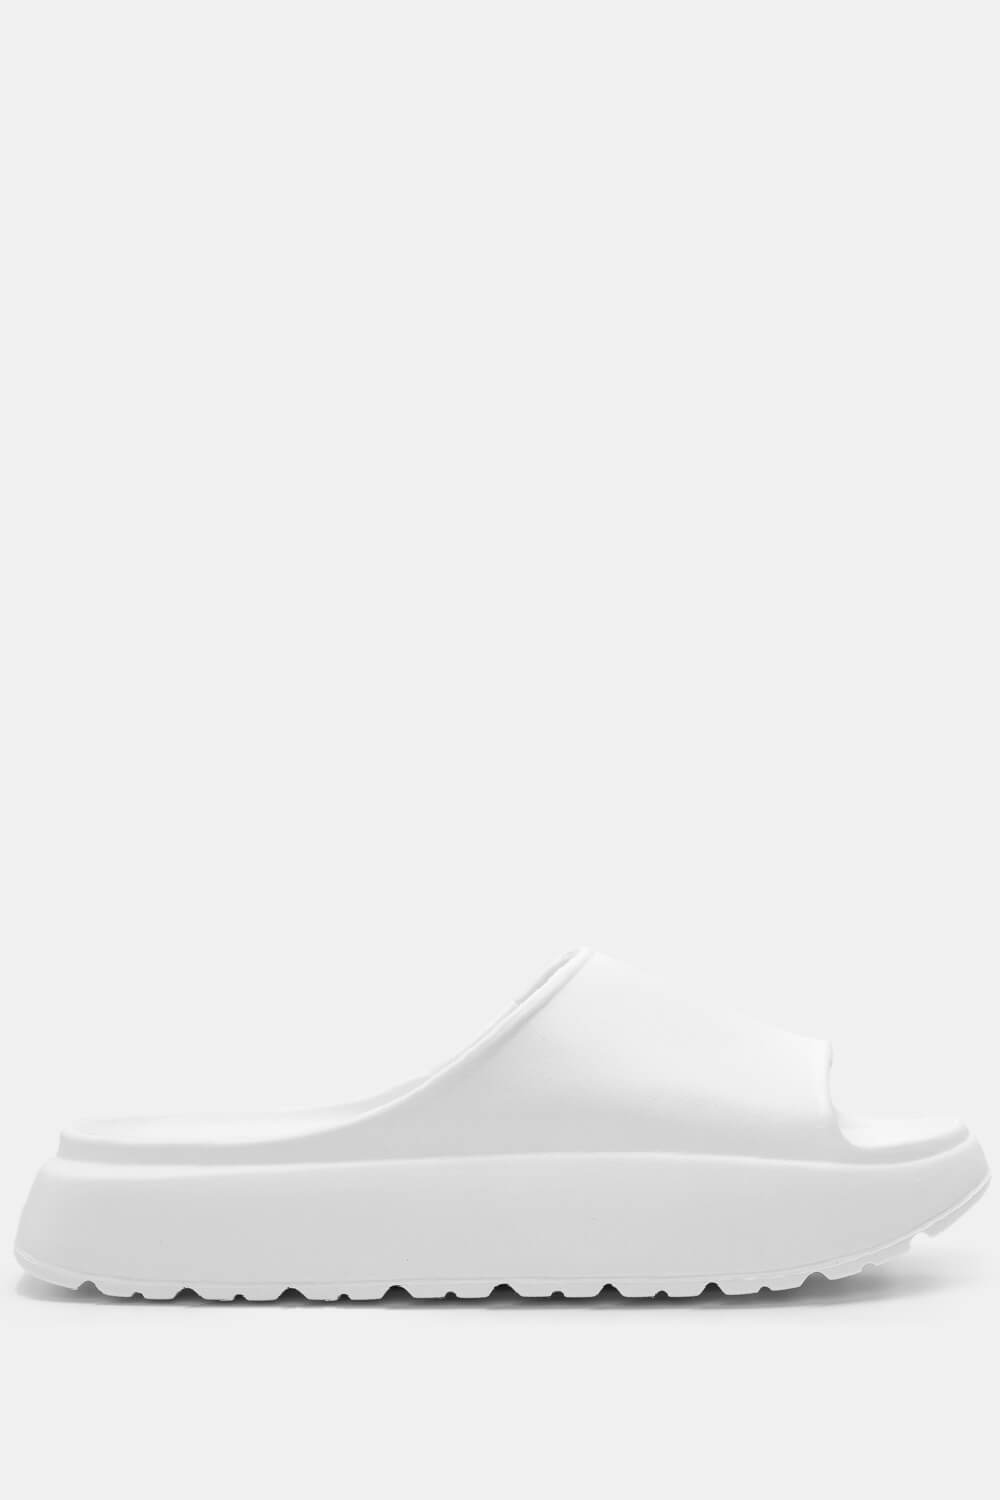 Παντόφλες Δίσολες Μονόχρωμες - Λευκό ΠΑΠΟΥΤΣΙΑ > Jelly Shoes